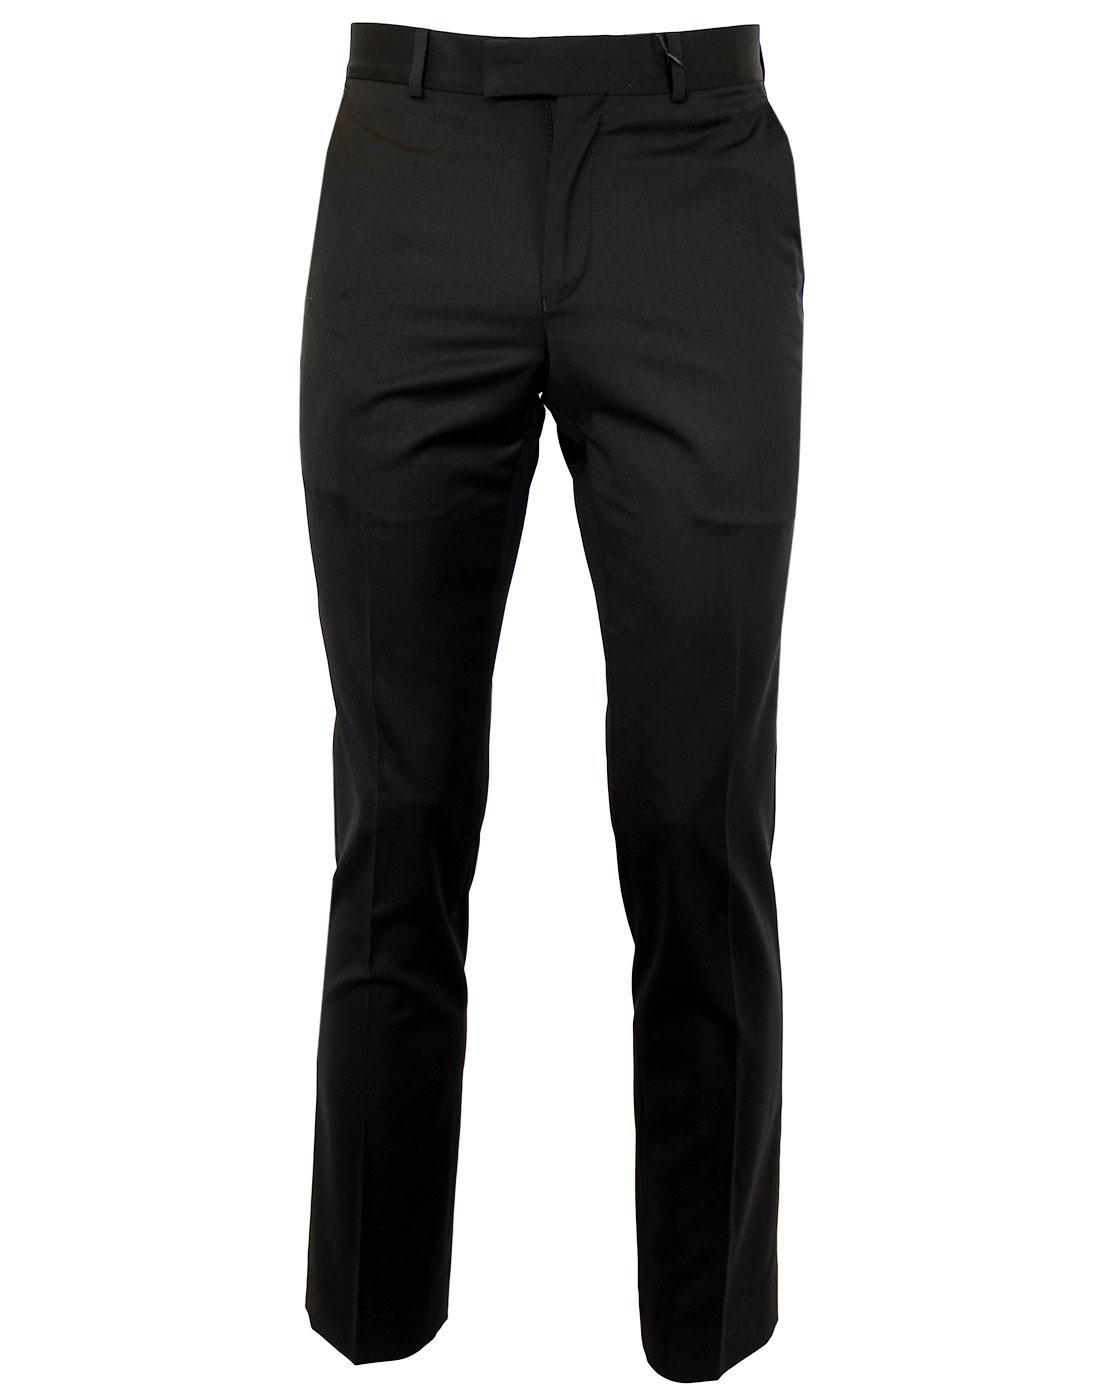 BEN SHERMAN Tailoring Mod Slim Black Trousers